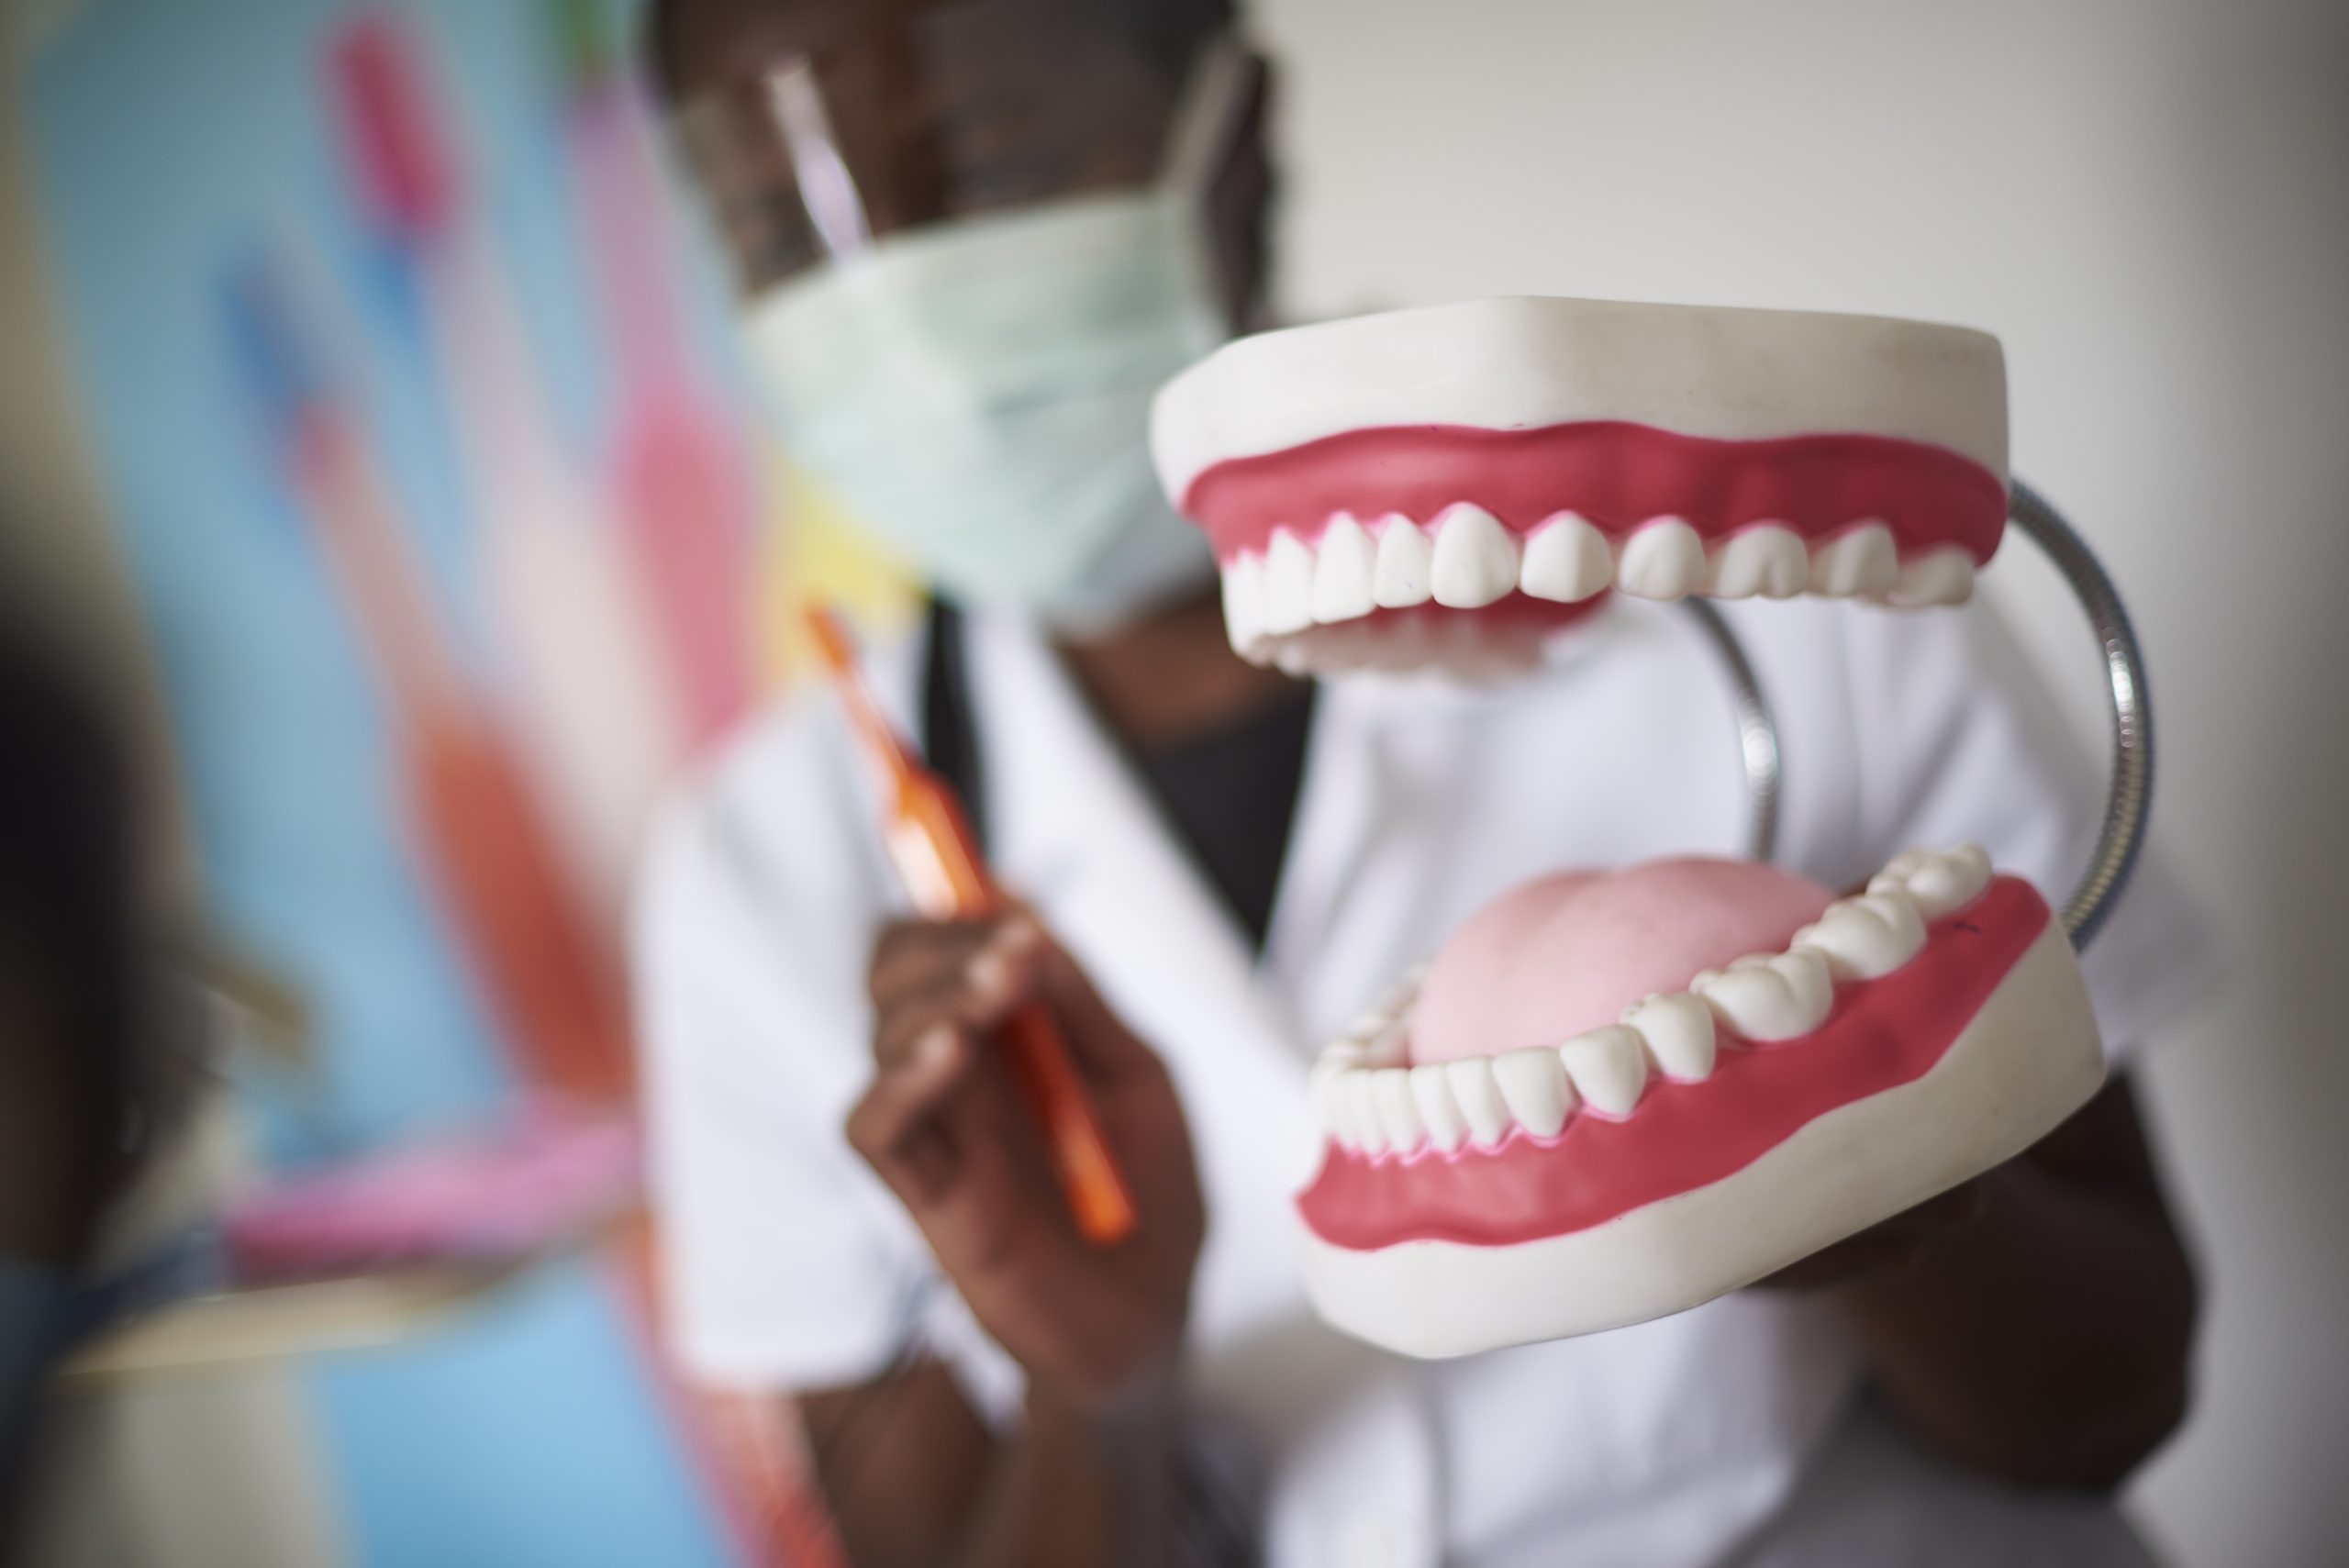 Tandsköterska på Kenswed tandvårdsklinik visar hur tandvård fungerar. (Foto: Frida Ström)